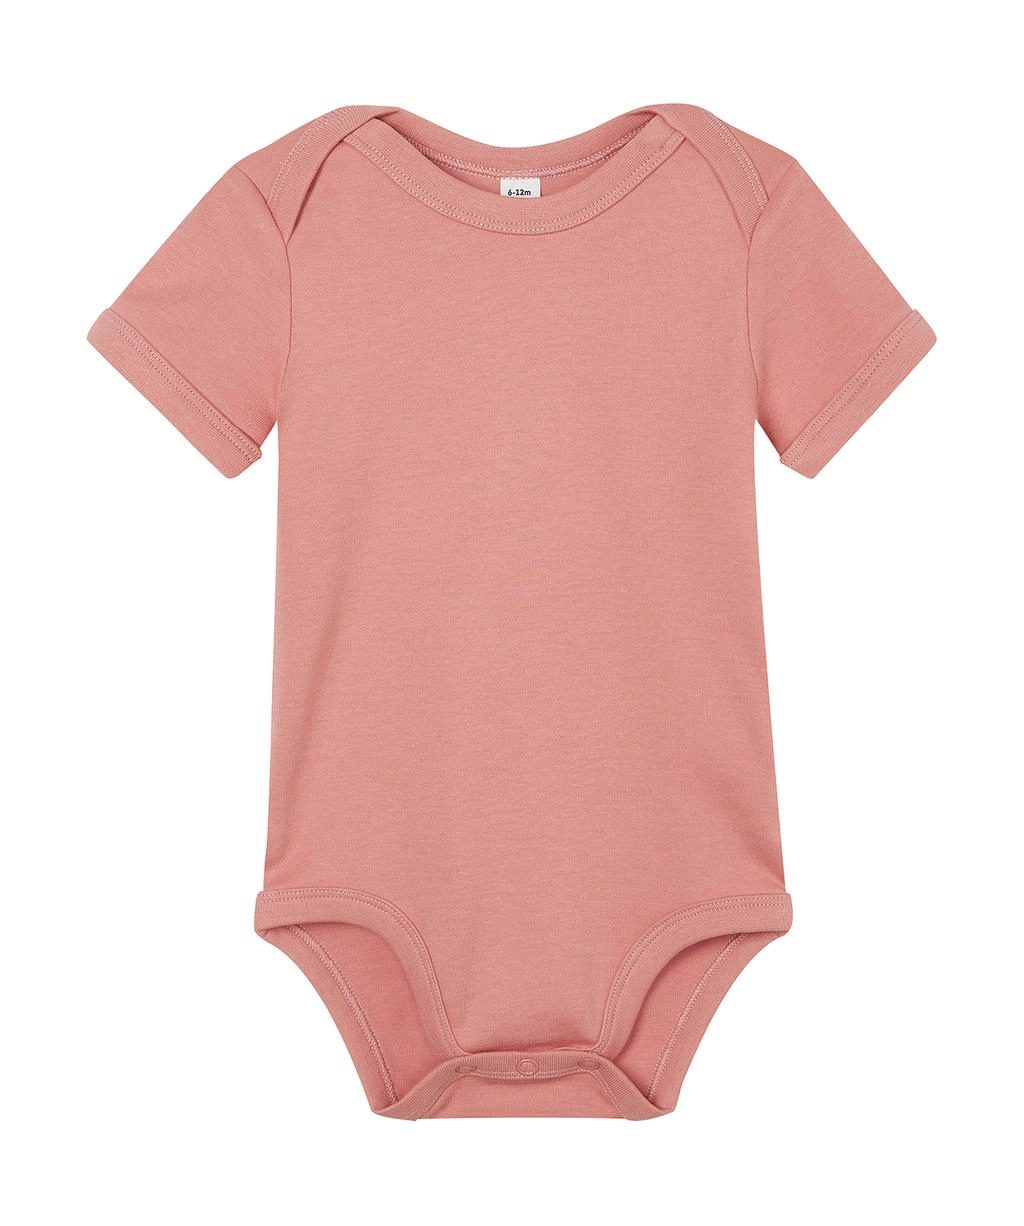 Baby Bodysuit zum Besticken und Bedrucken in der Farbe Dusty Rose mit Ihren Logo, Schriftzug oder Motiv.